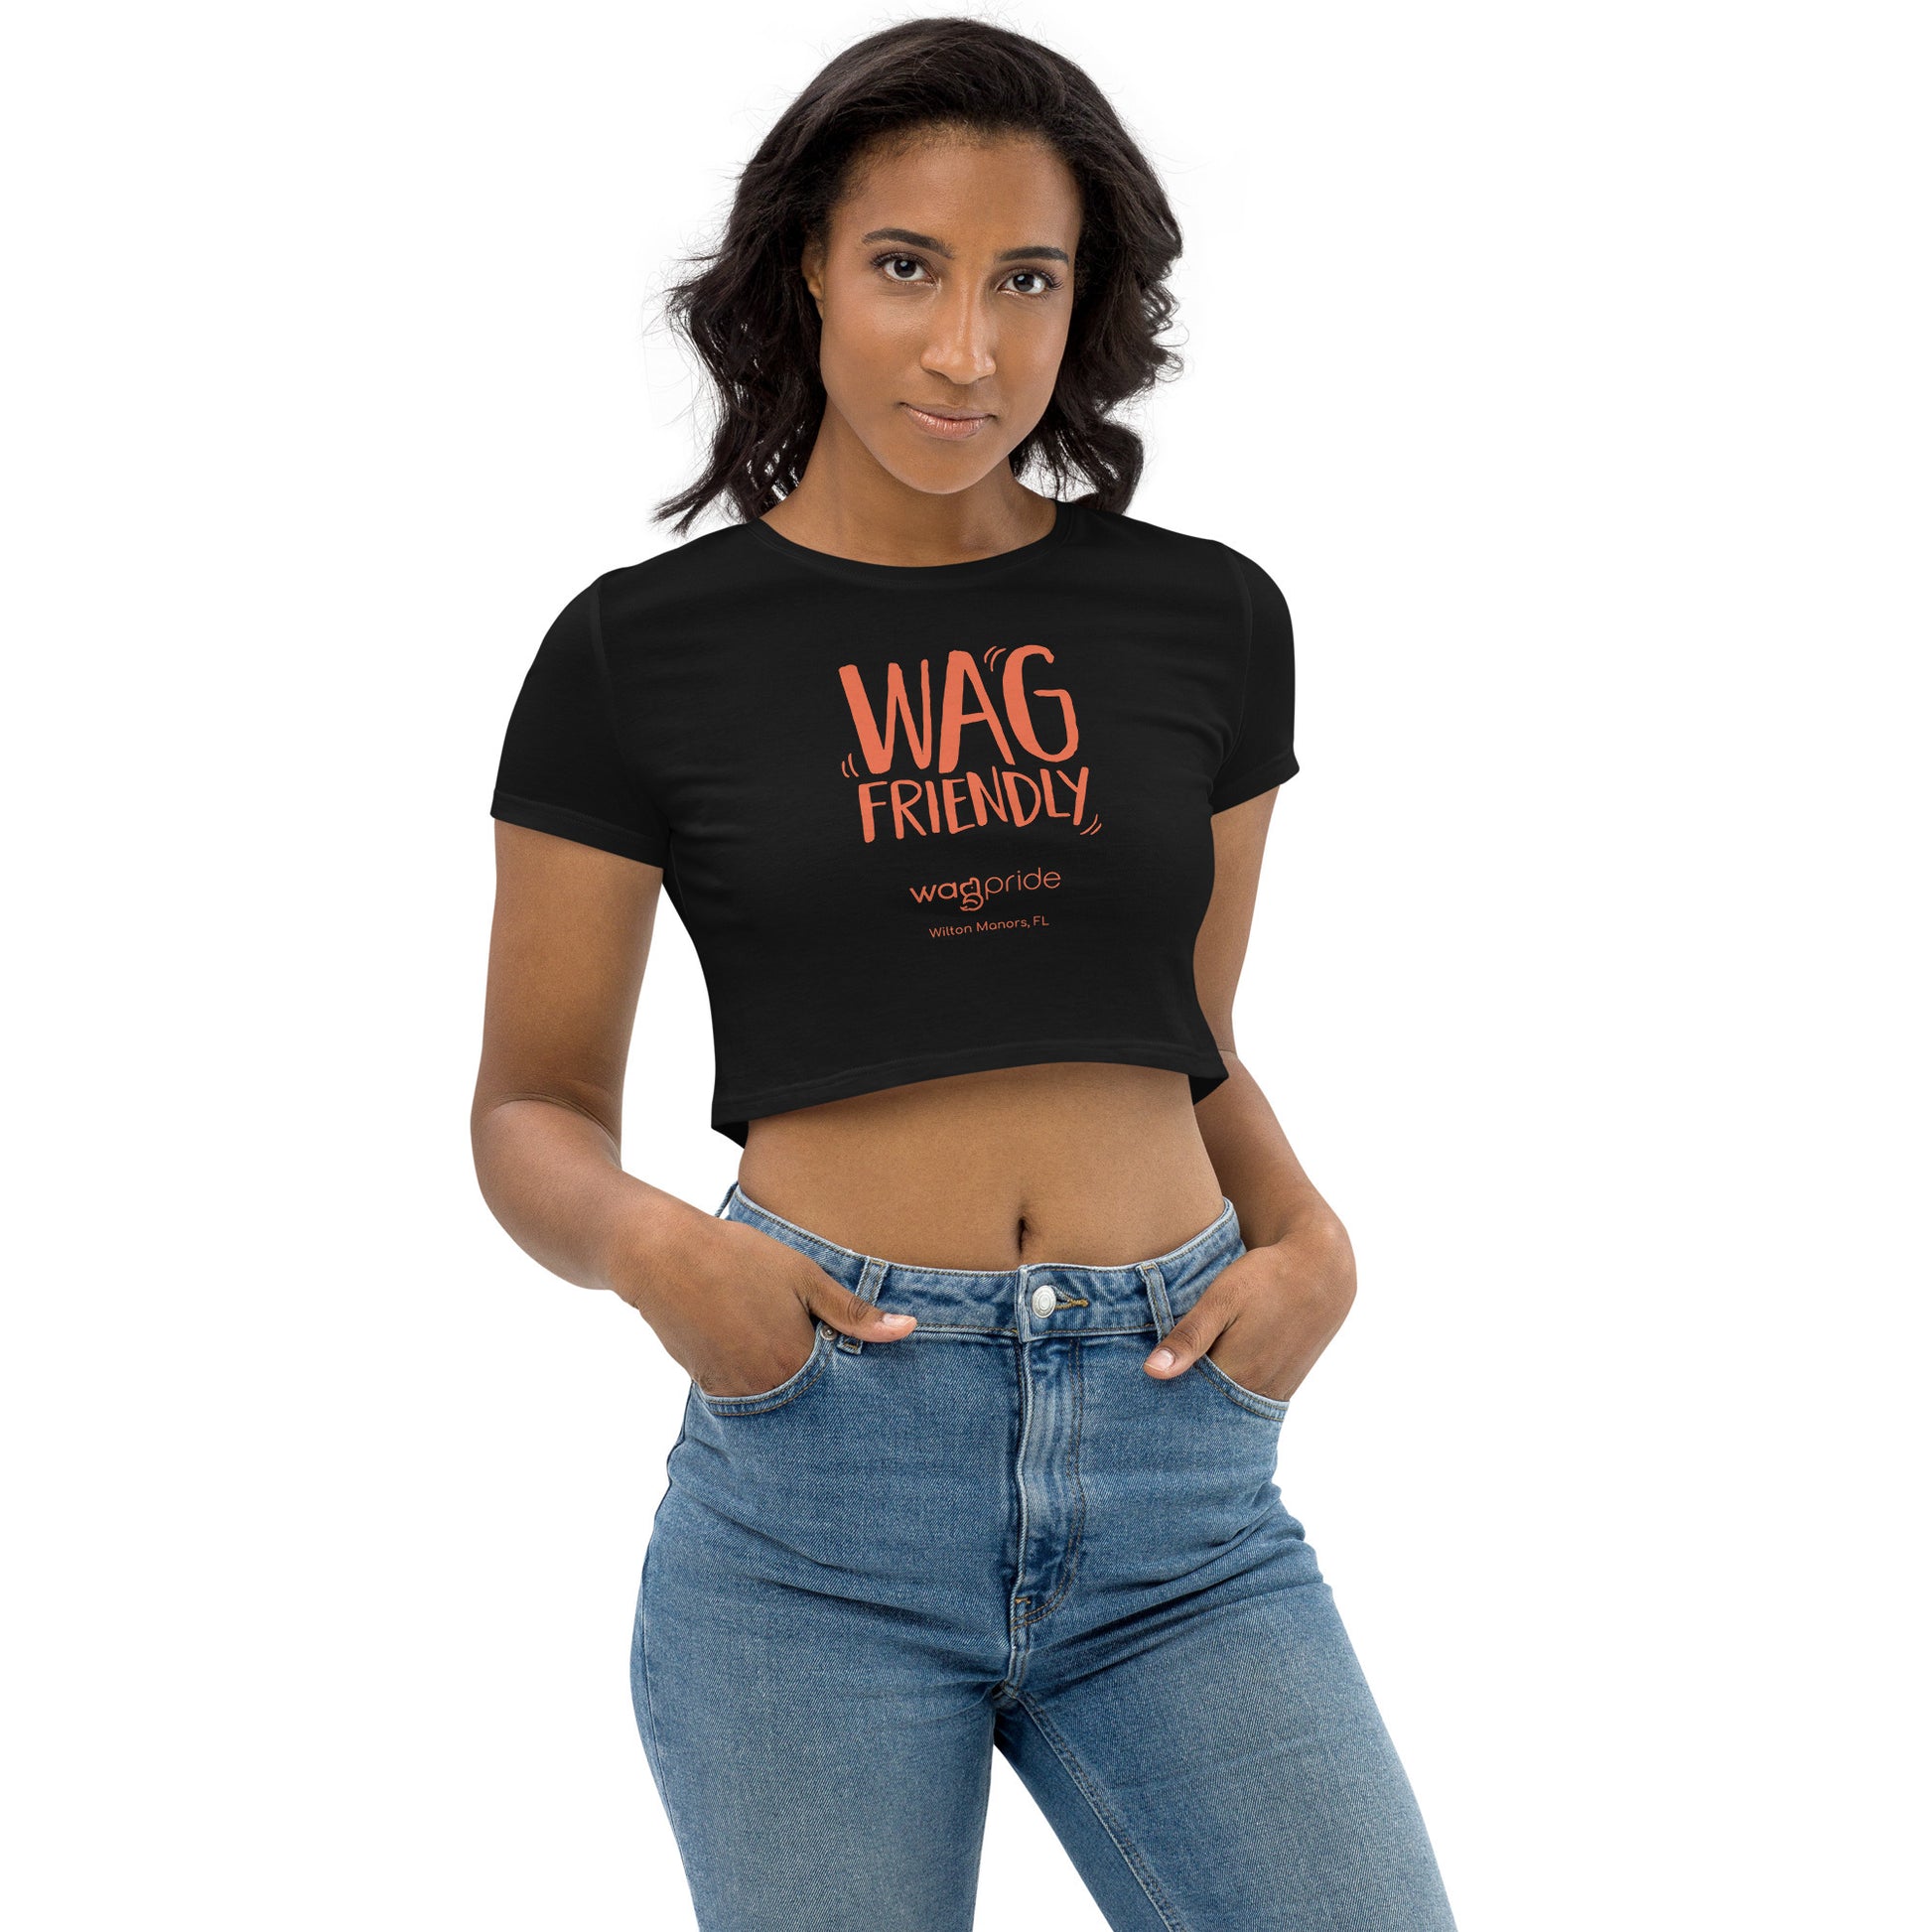 Wagpride Wag Friendly Women's Organic Crop Top Size XS